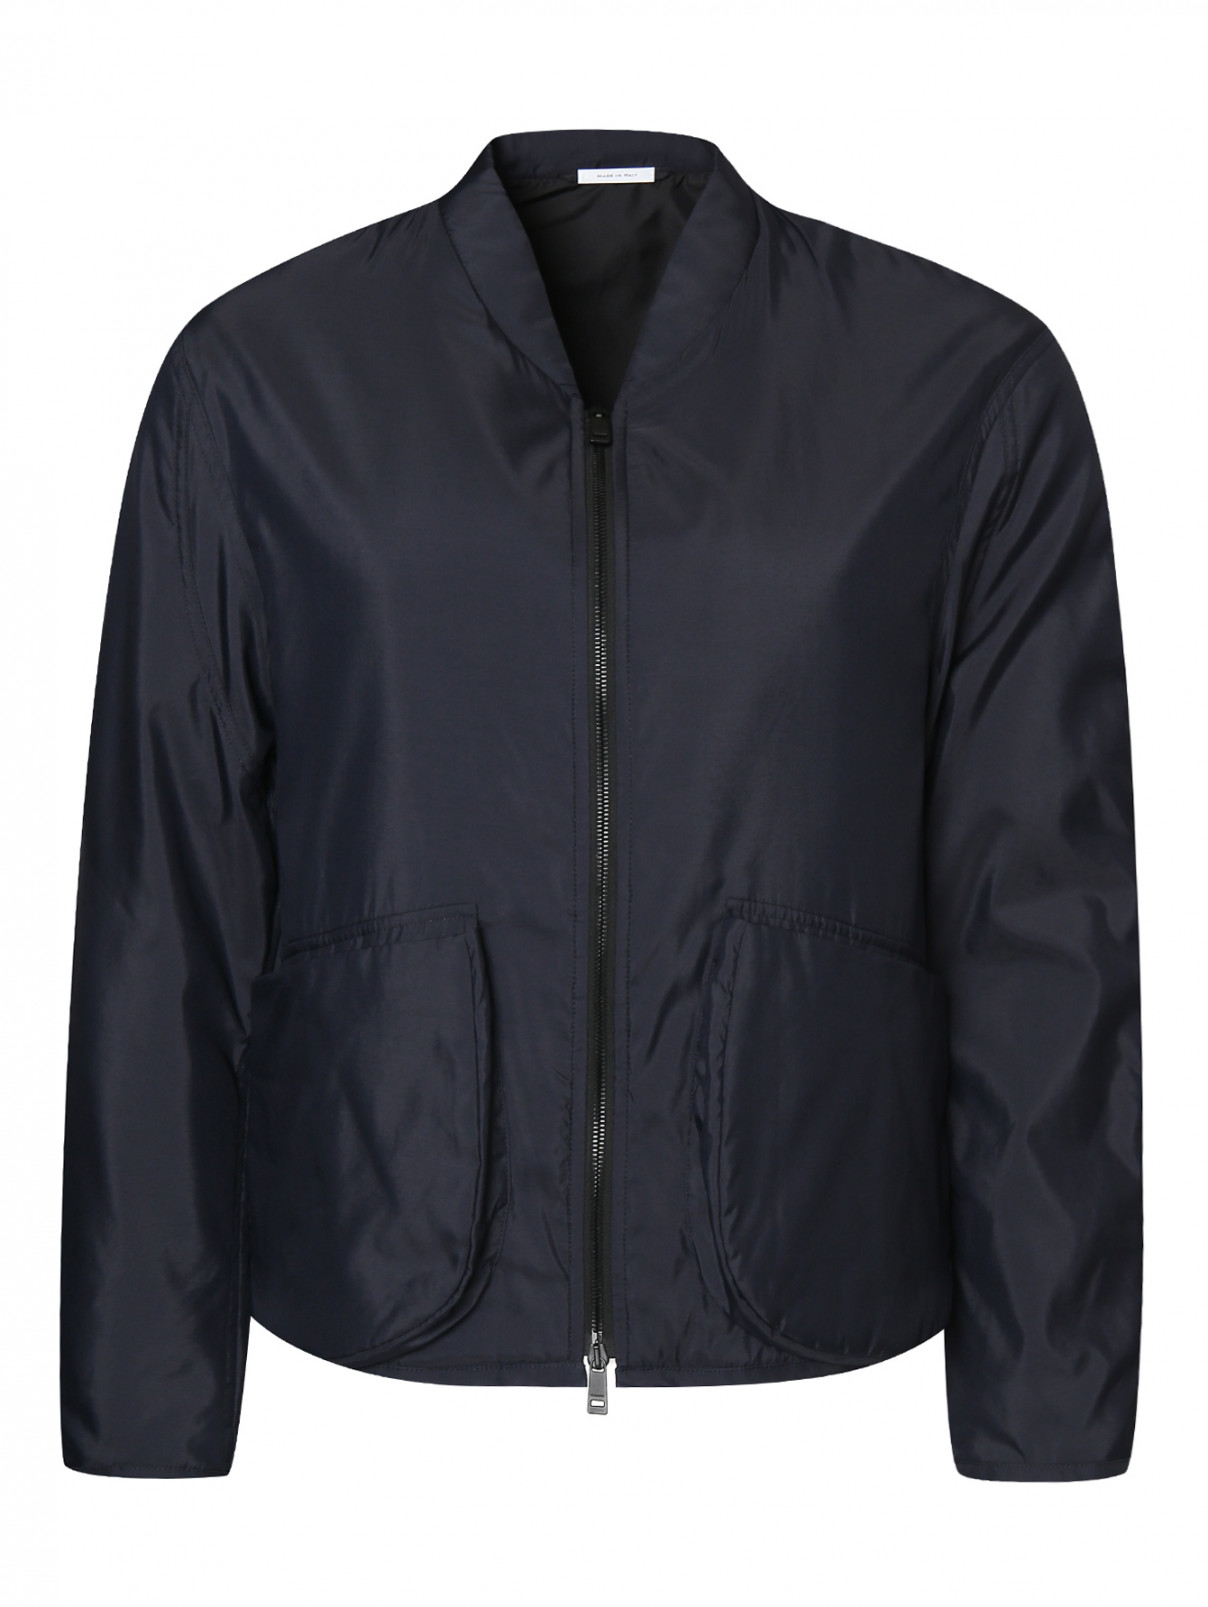 Куртка с трикотажной вставкой на спине Jil Sander  –  Общий вид  – Цвет:  Синий